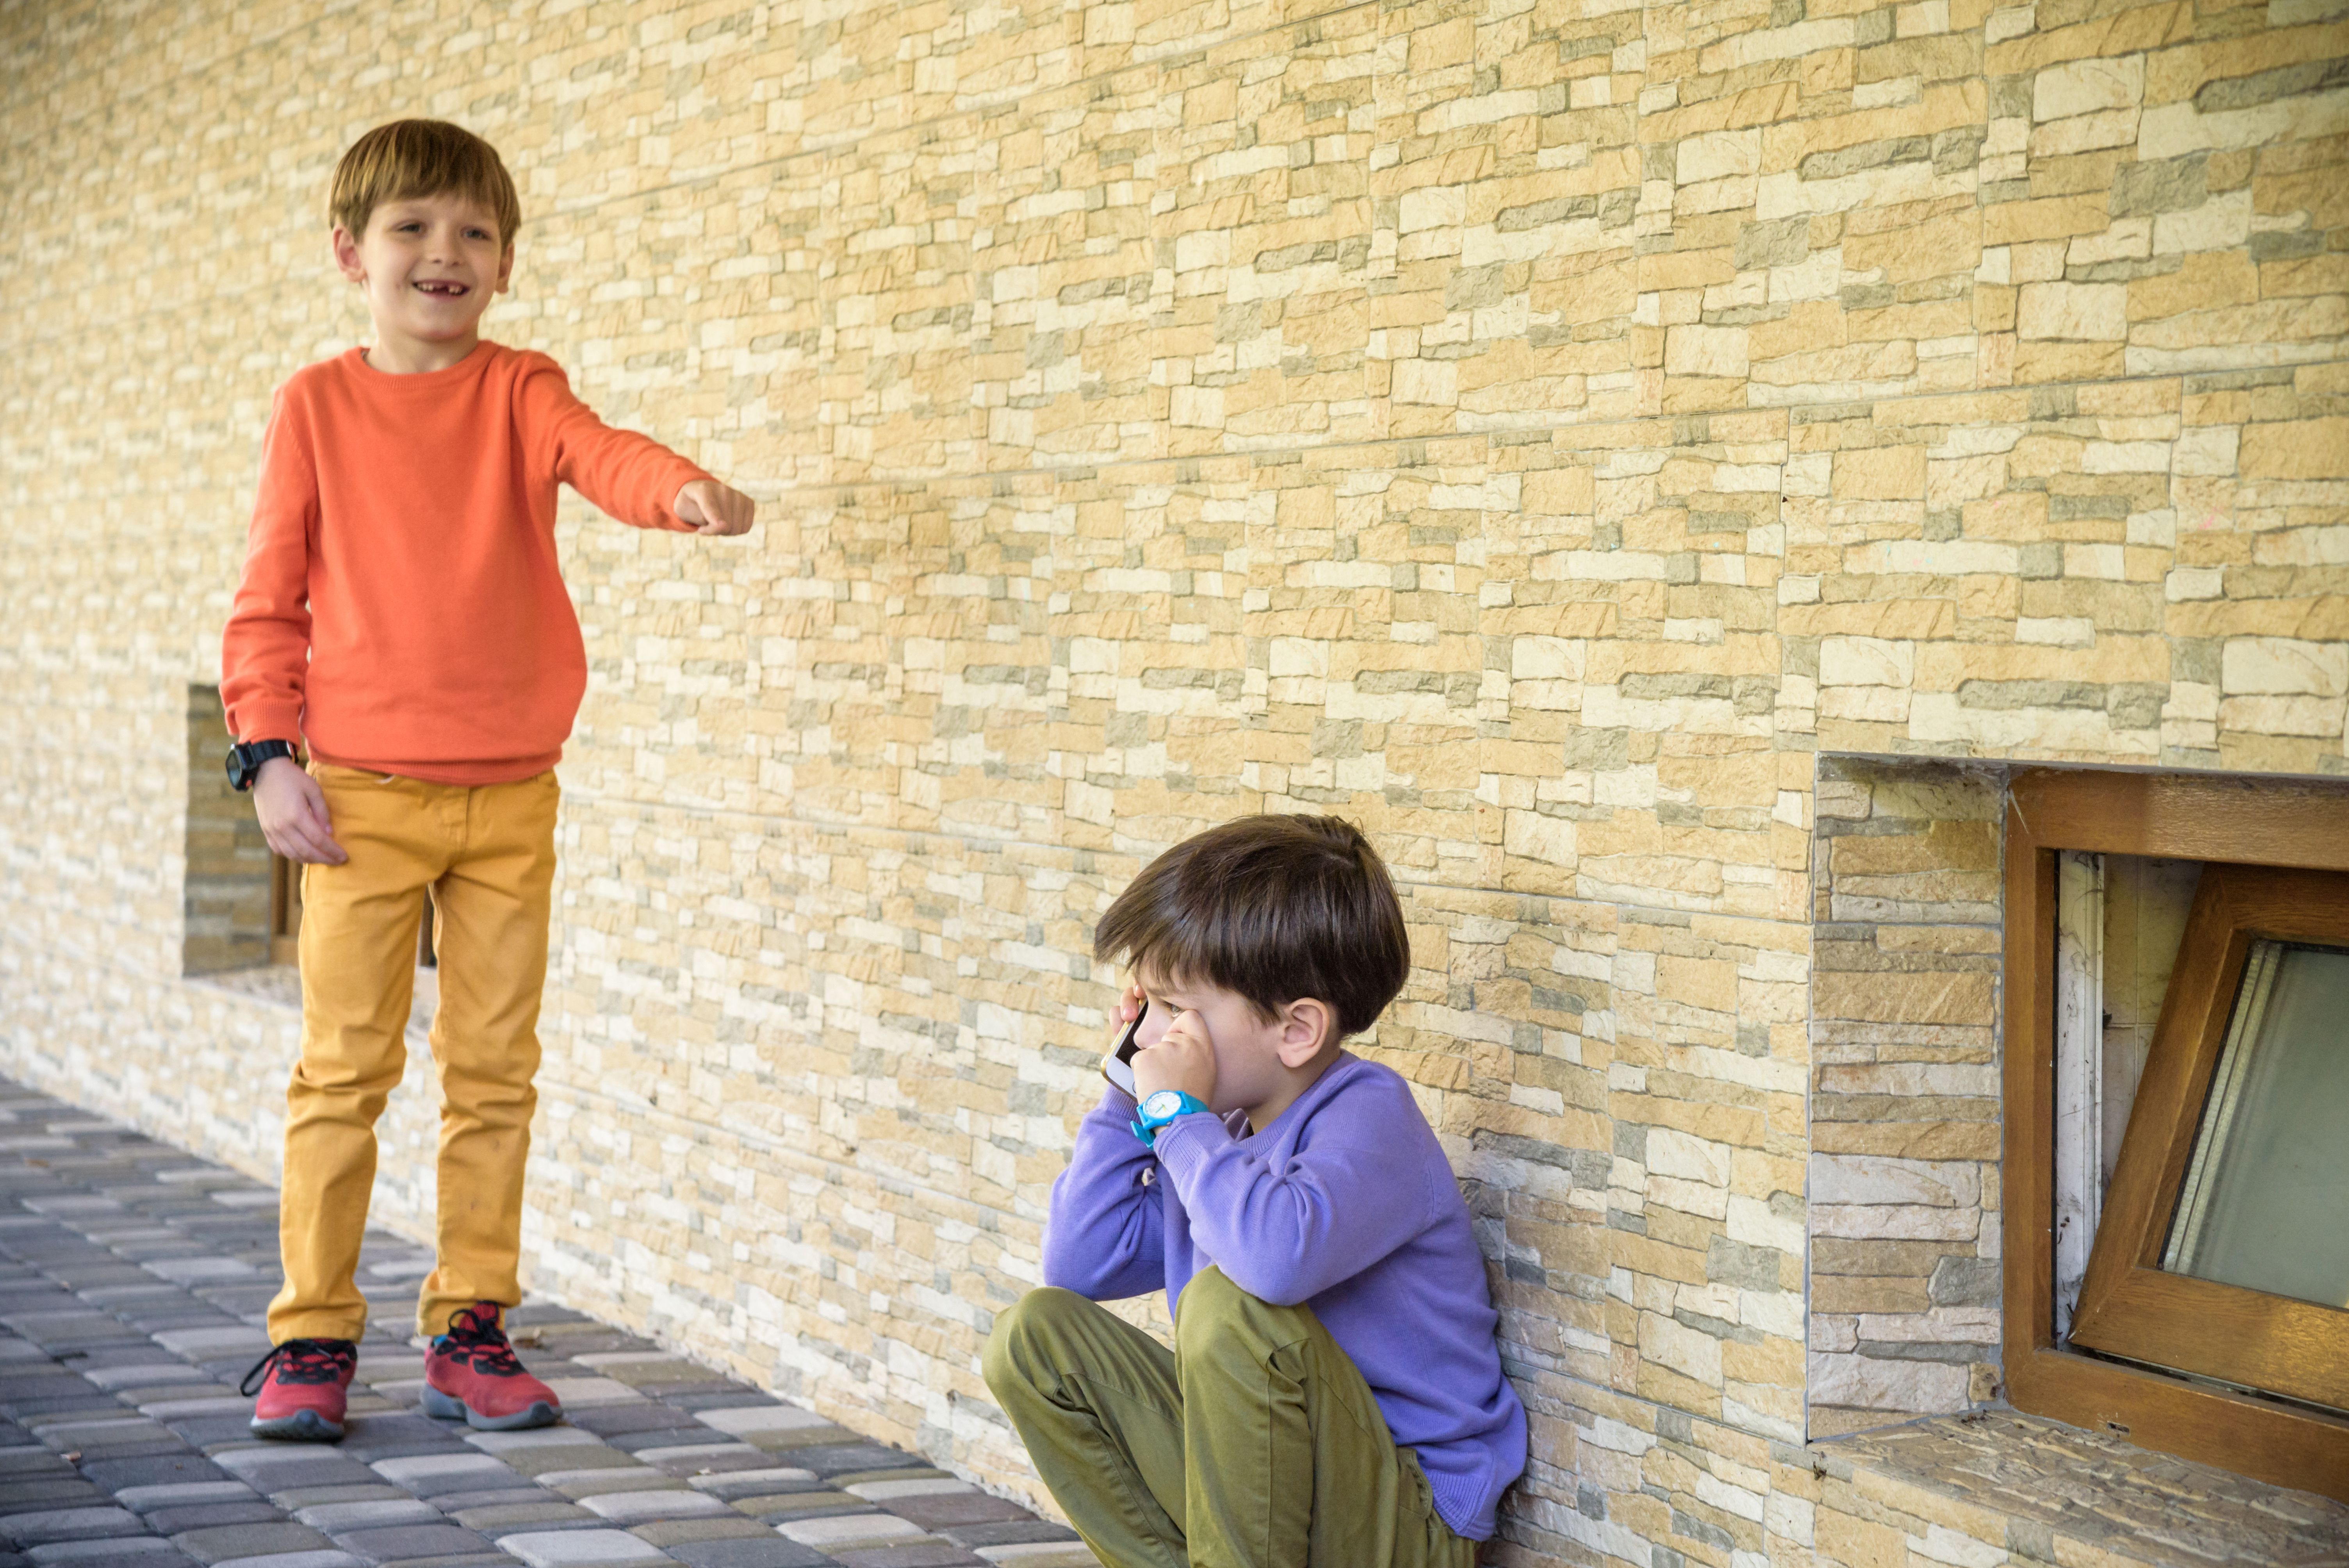 Un jeune garçon se moque d'un autre petit garçon qui pleure | Source : Shutterstock